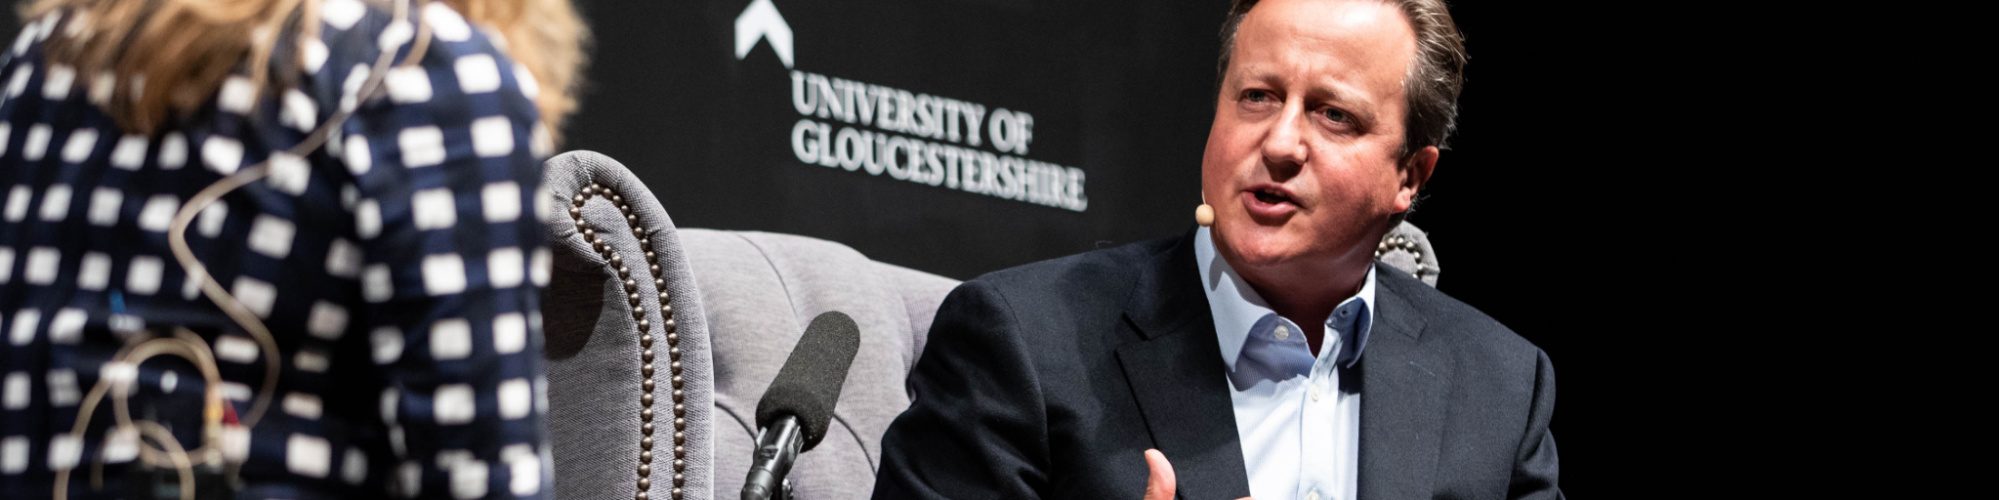 David Cameron at Cheltenham Literature Festival 2019